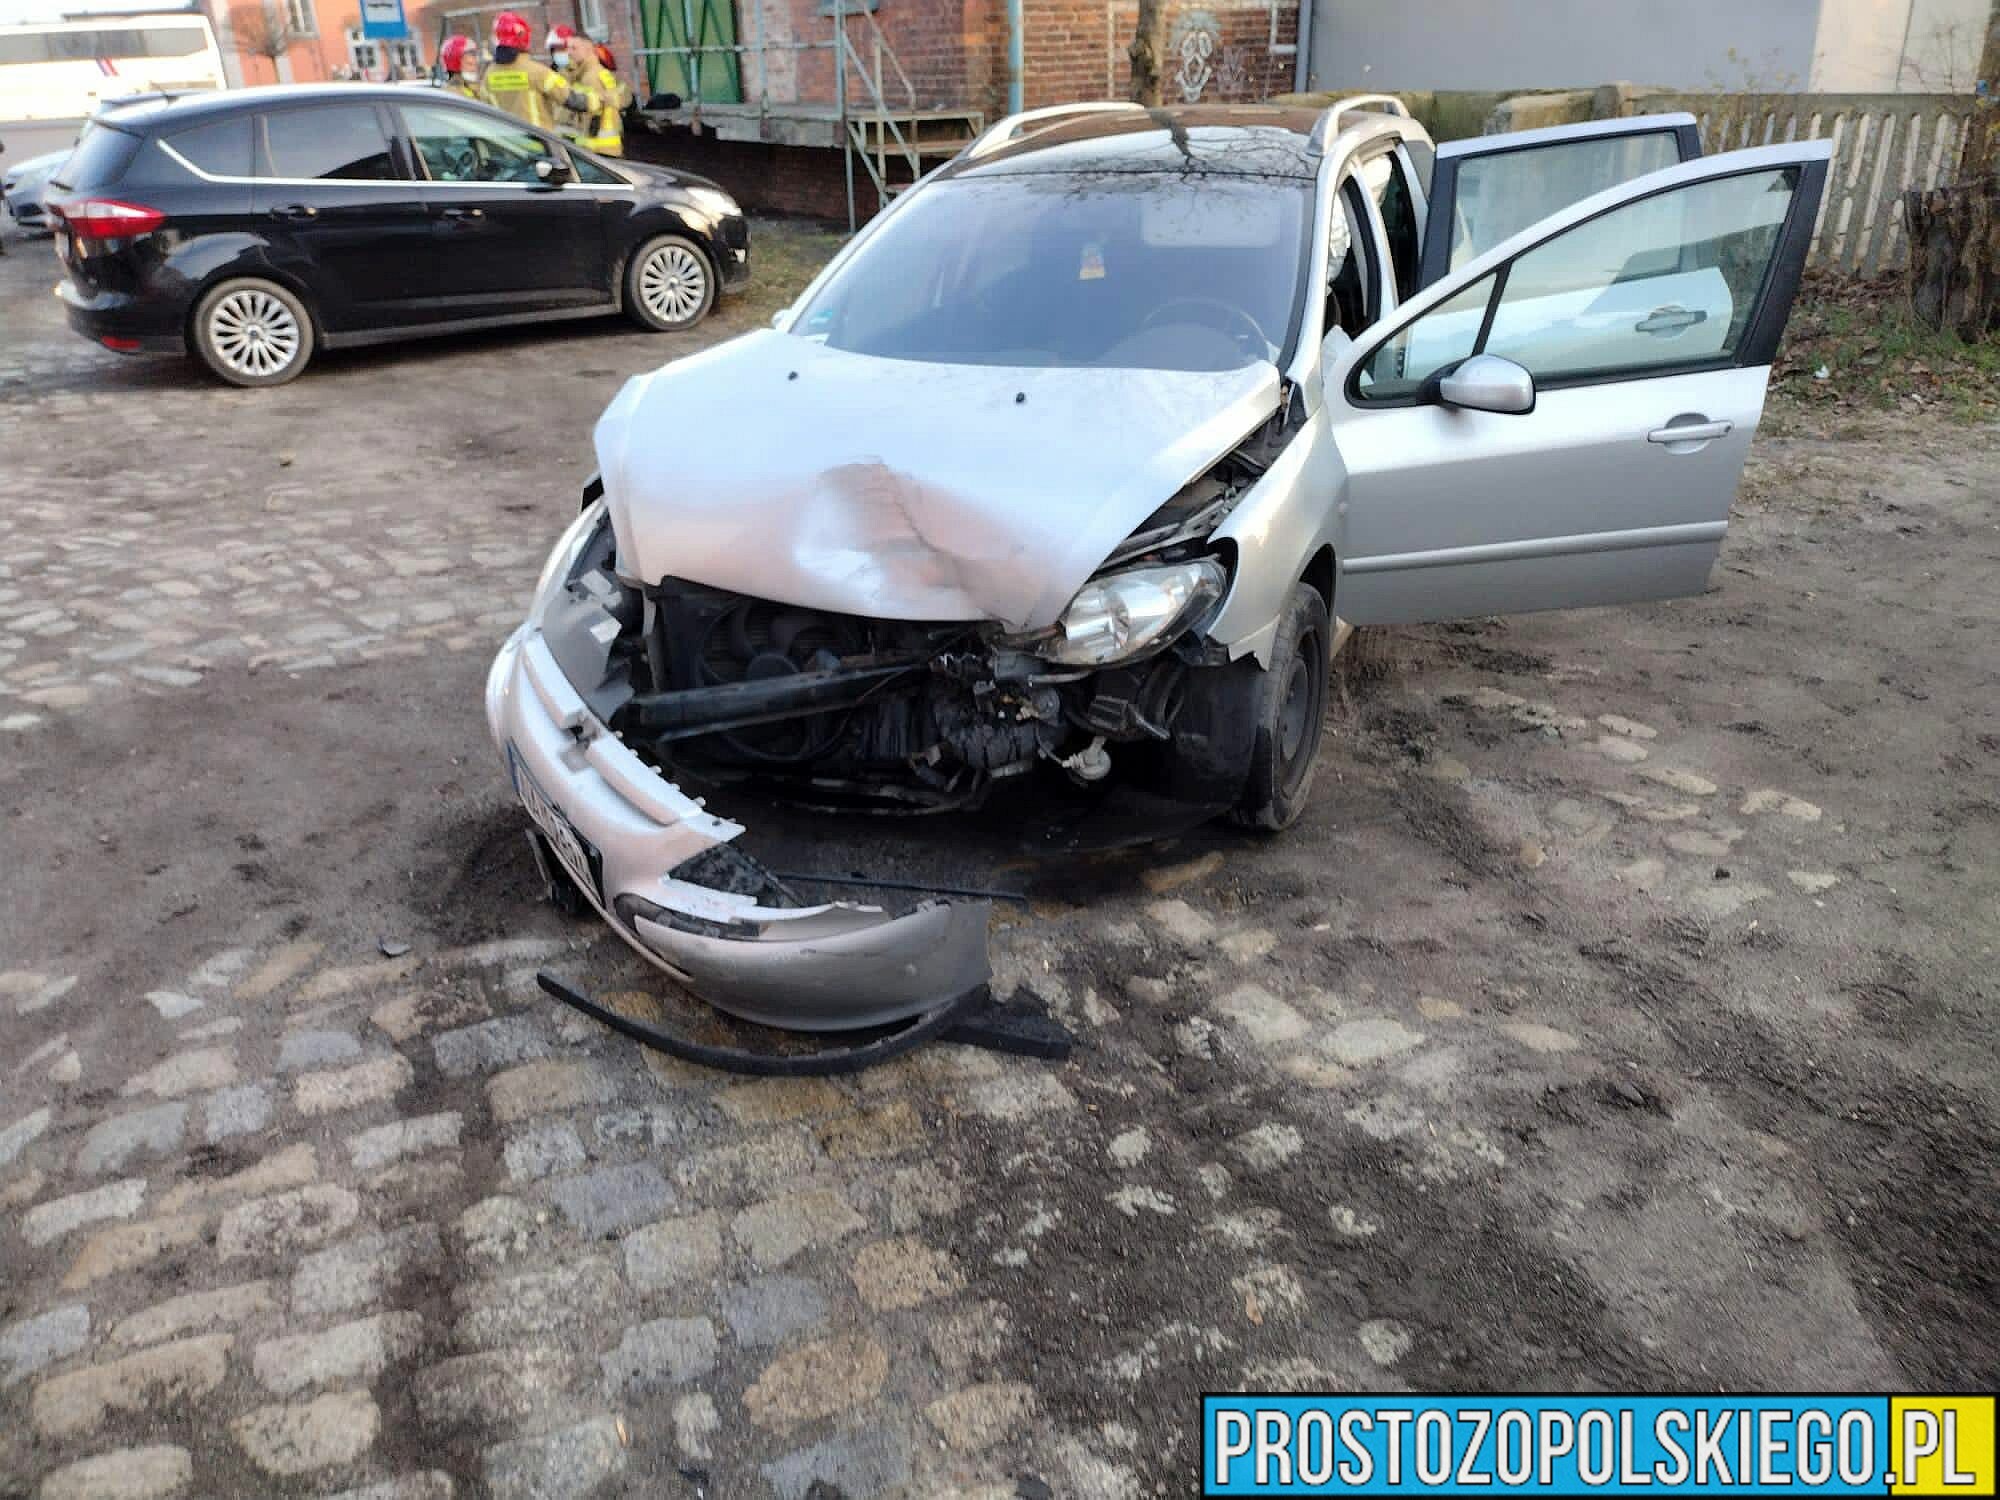 19-latka mająca prawo jazdy od dwóch miesięcy spowodowała kolizję w Namysłowie.(Zdjęcia)